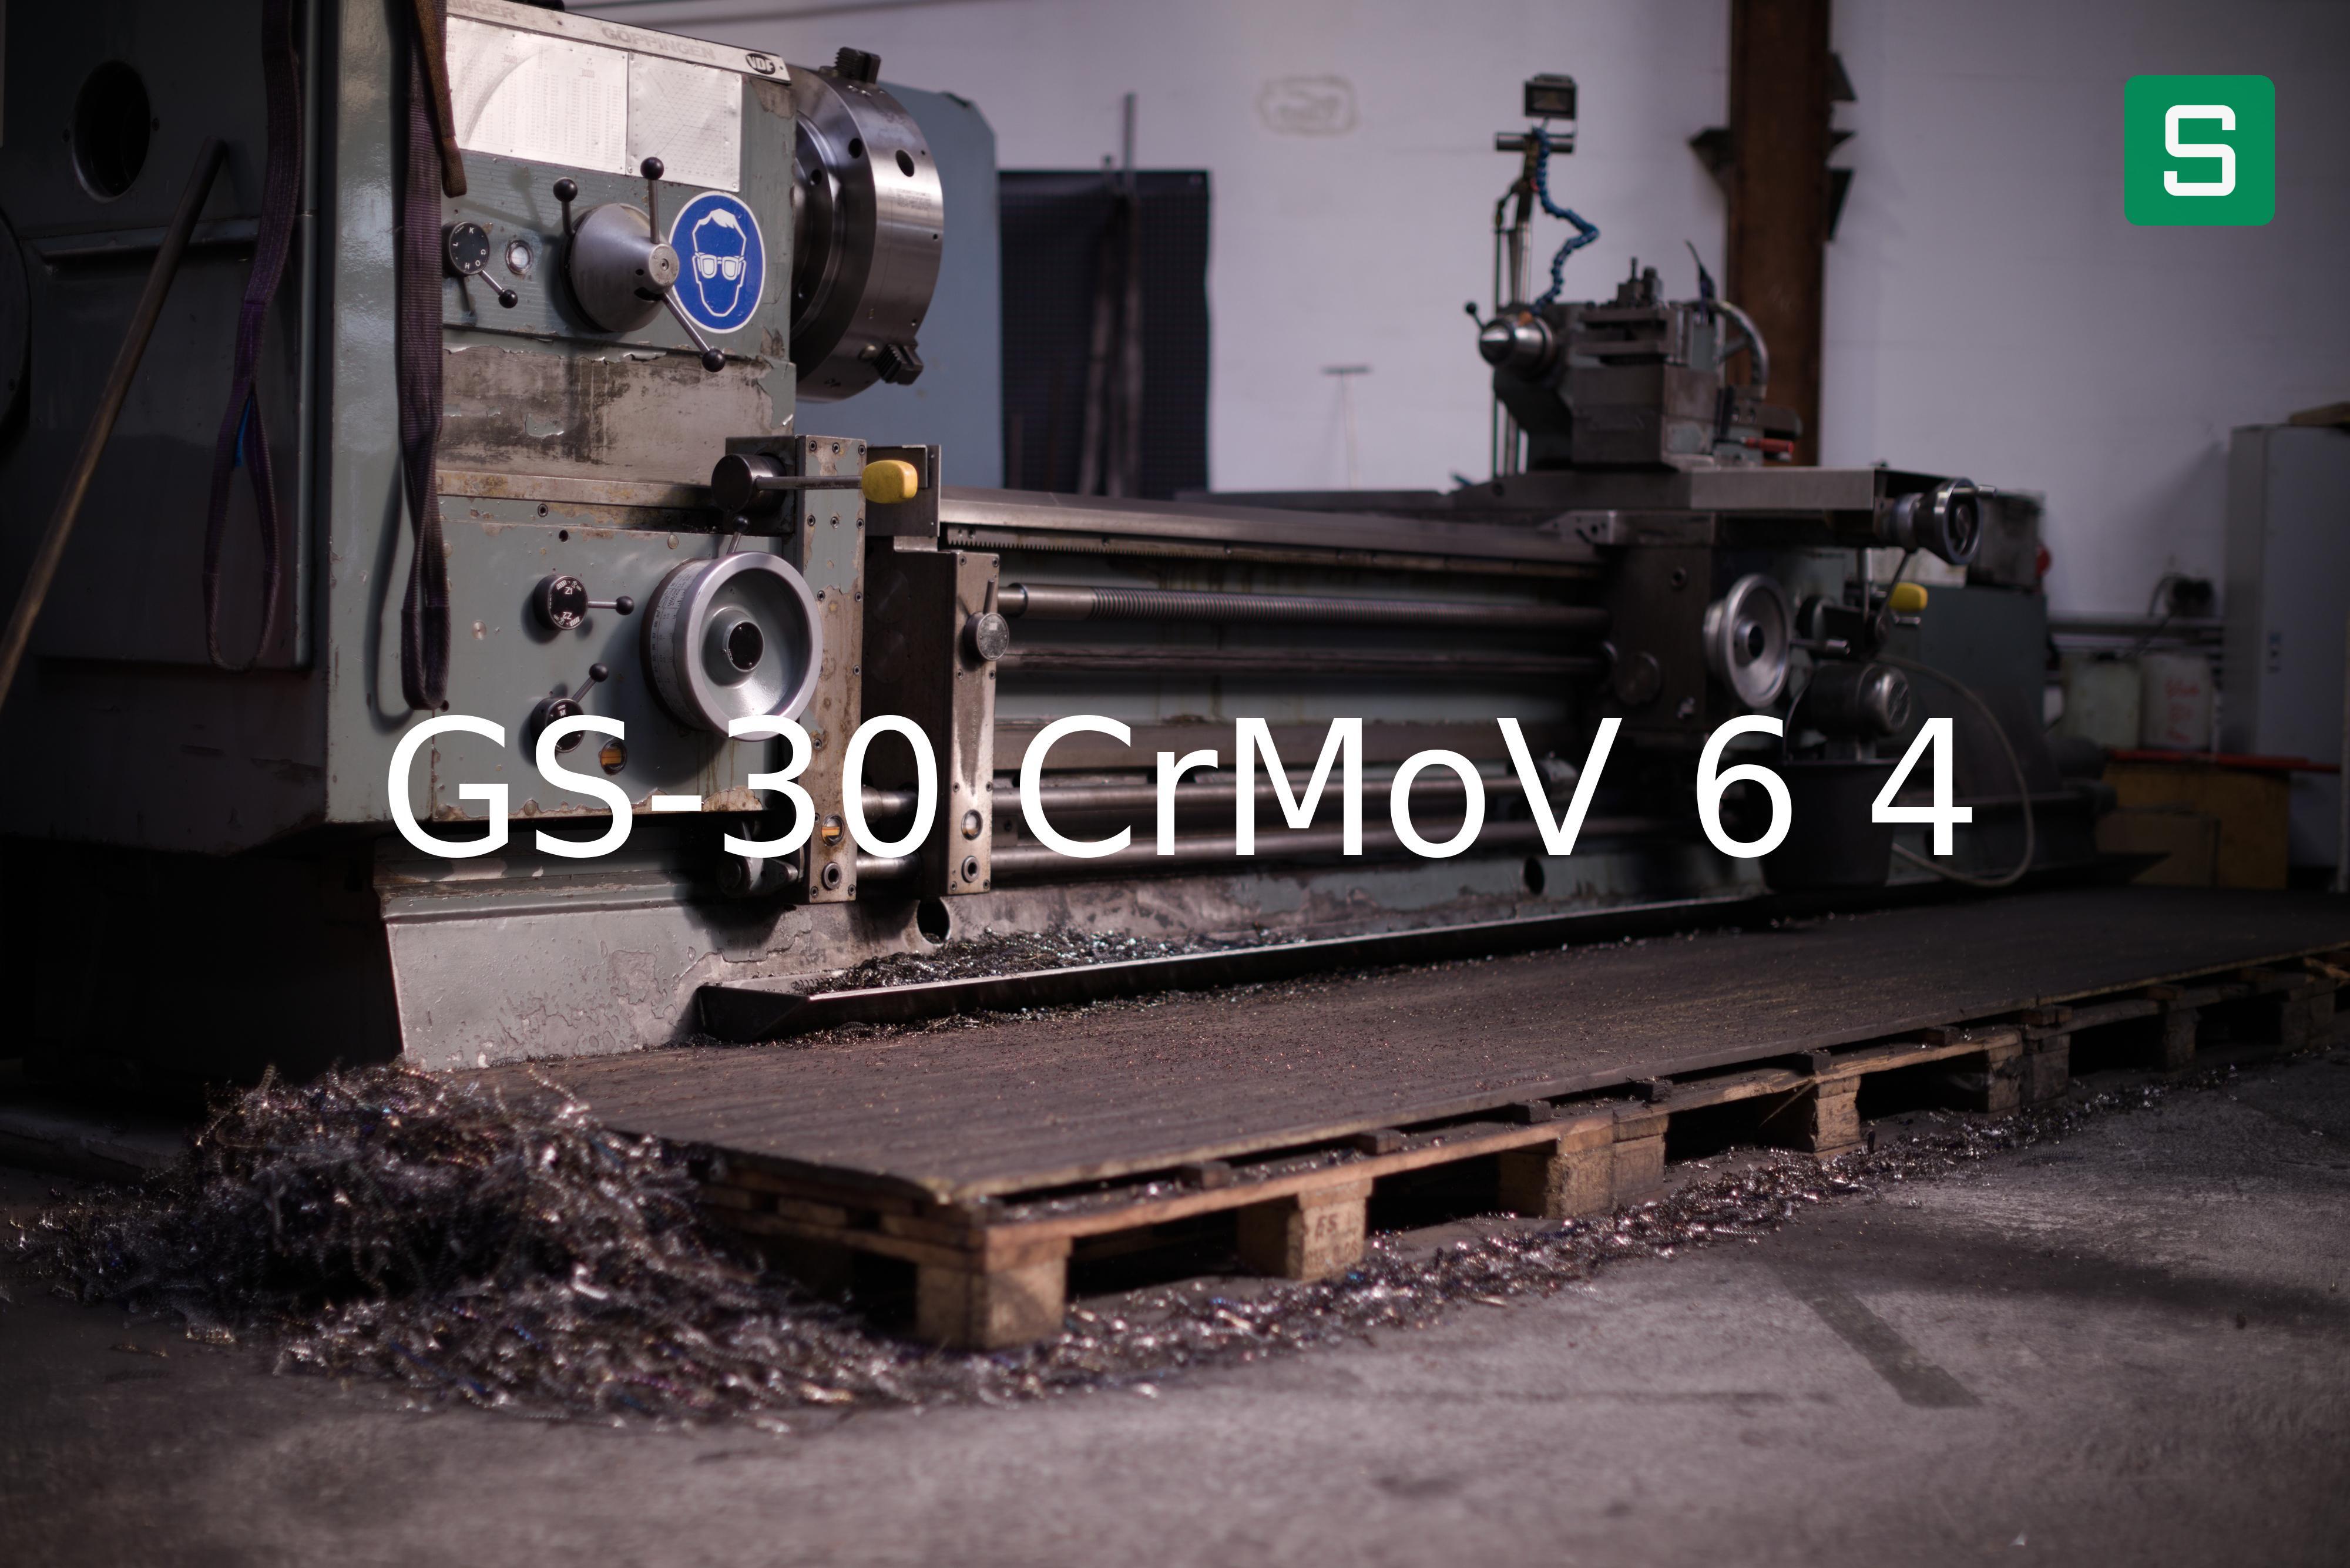 Steel Material: GS-30 CrMoV 6 4